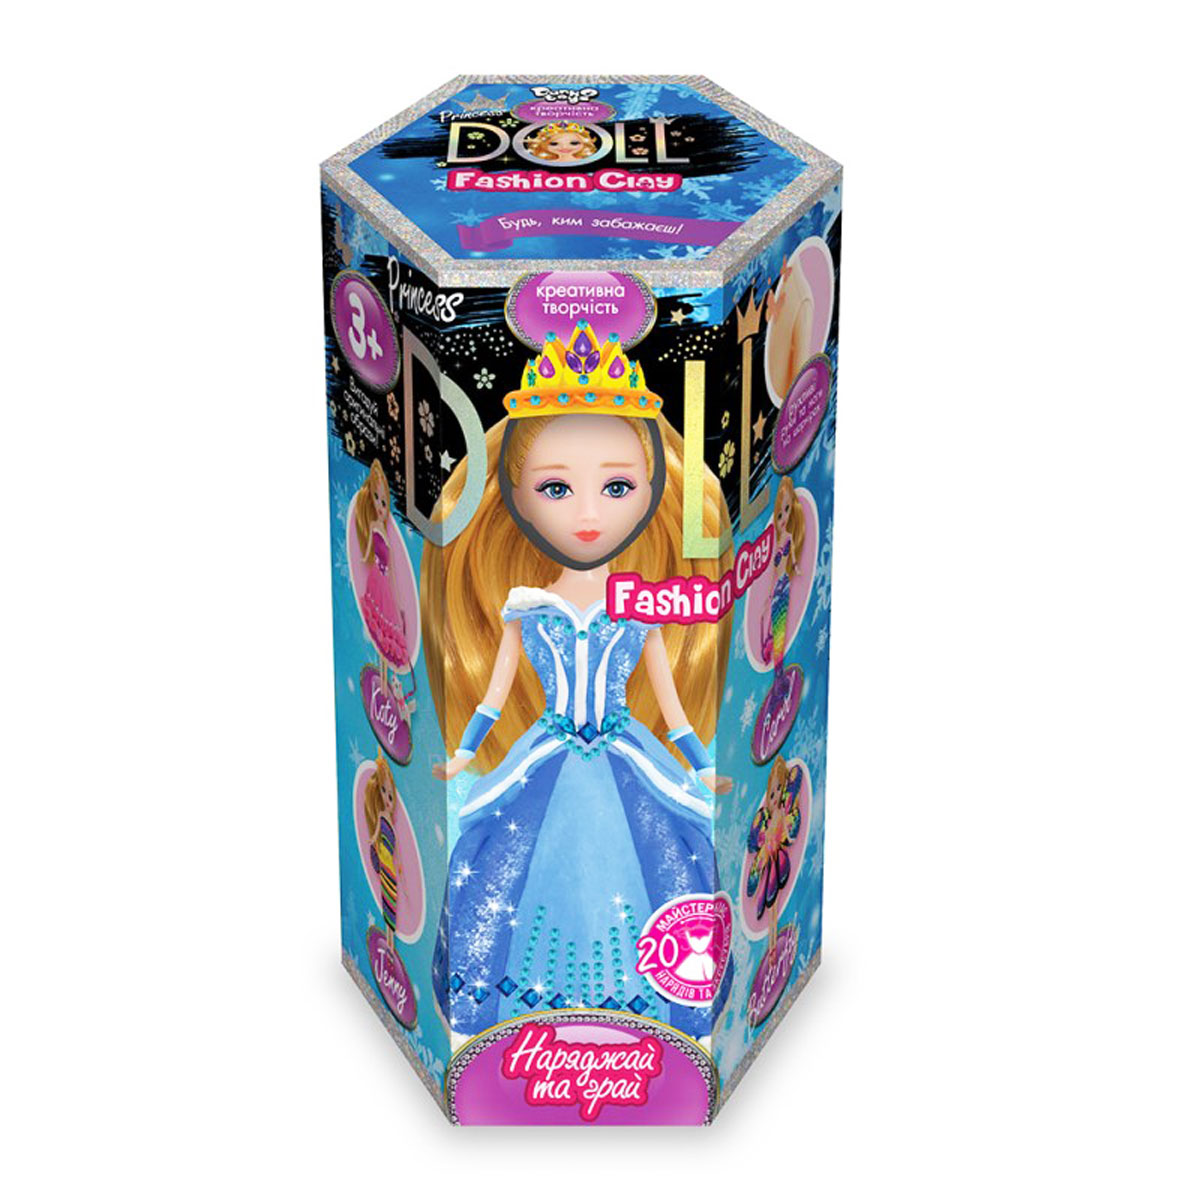 Набір для творчості 'Princess doll' пластилін українська мова